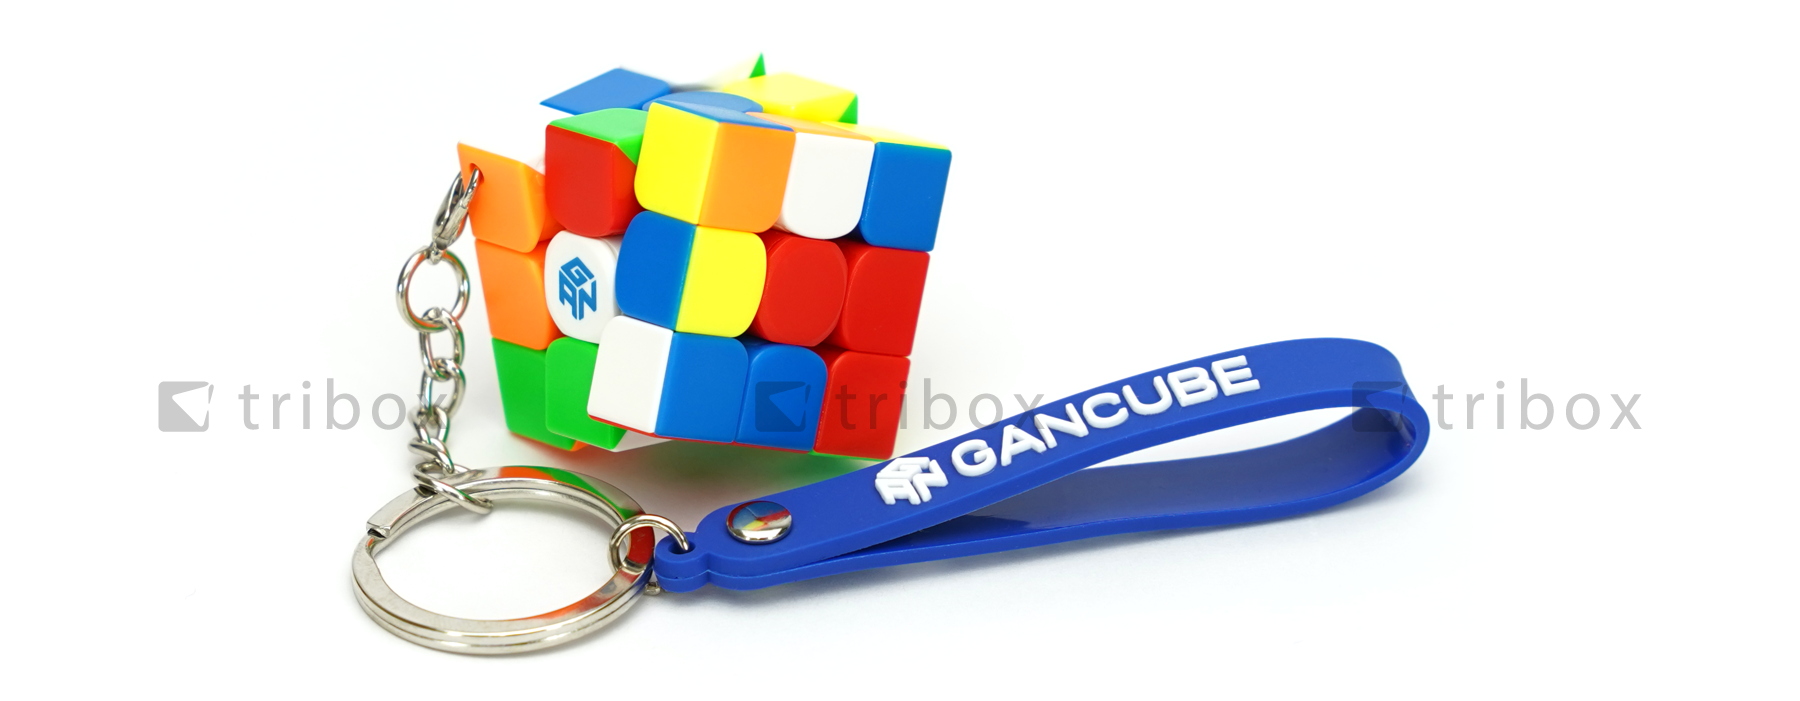 triboxストア / GAN330 Keychain Stickerless